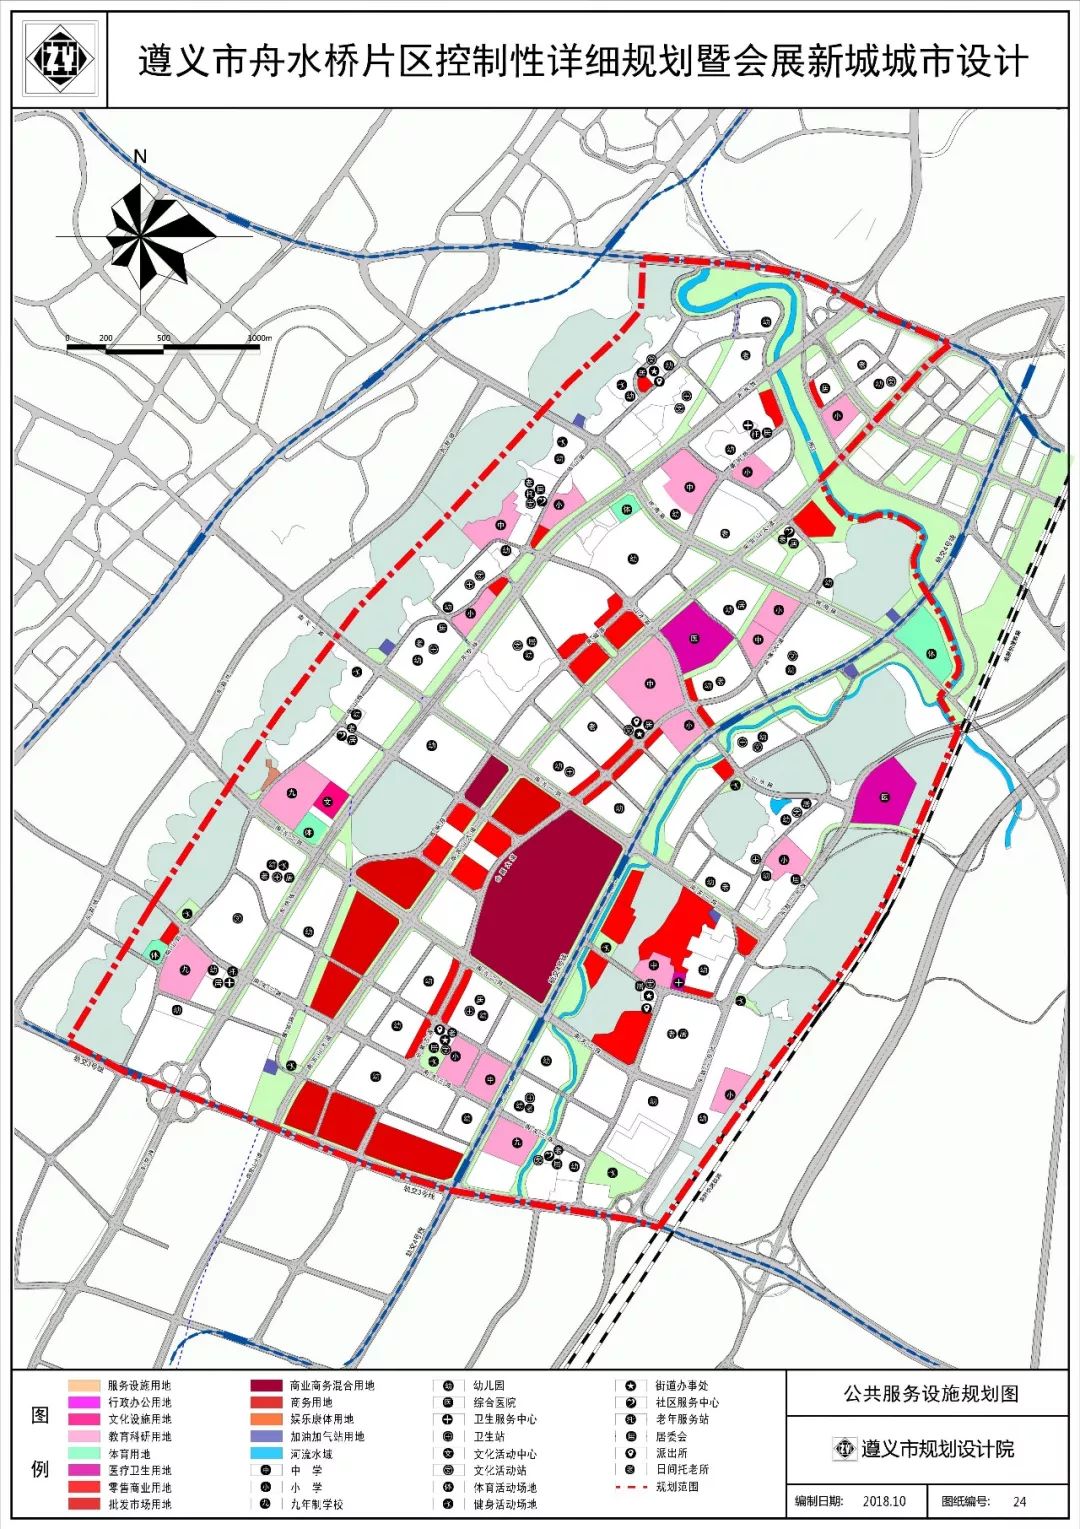 相关规划图通告与规划简介在规划简介内,提到了定位为遵义市城市新